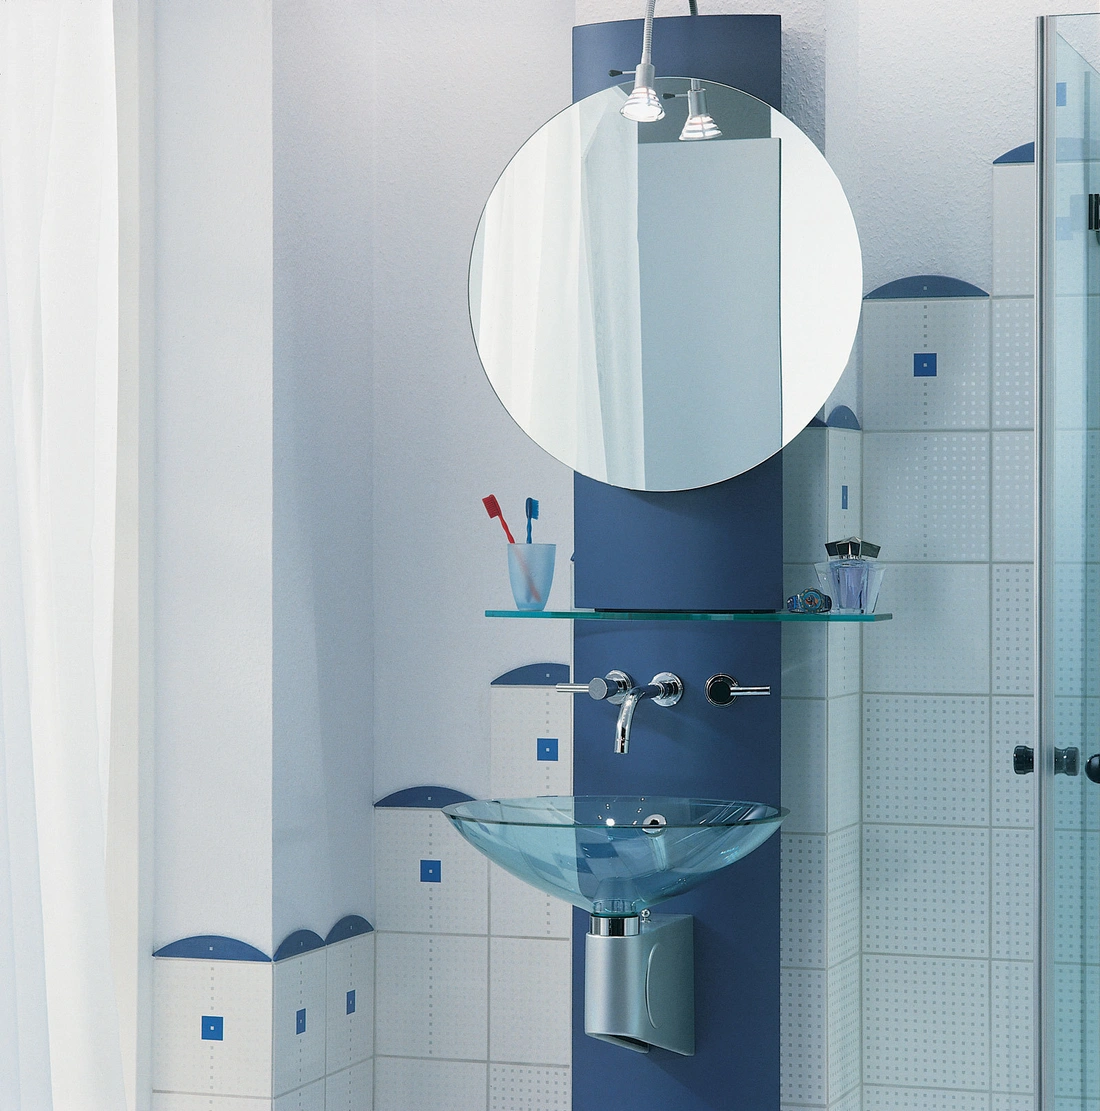 Холодные оттенки голубого цвета, прозрачные аксессуары, хромированные ручки помогут наполнить интерьер ванной светом и воздухом. Стиль hi-tech -хорошая идея!